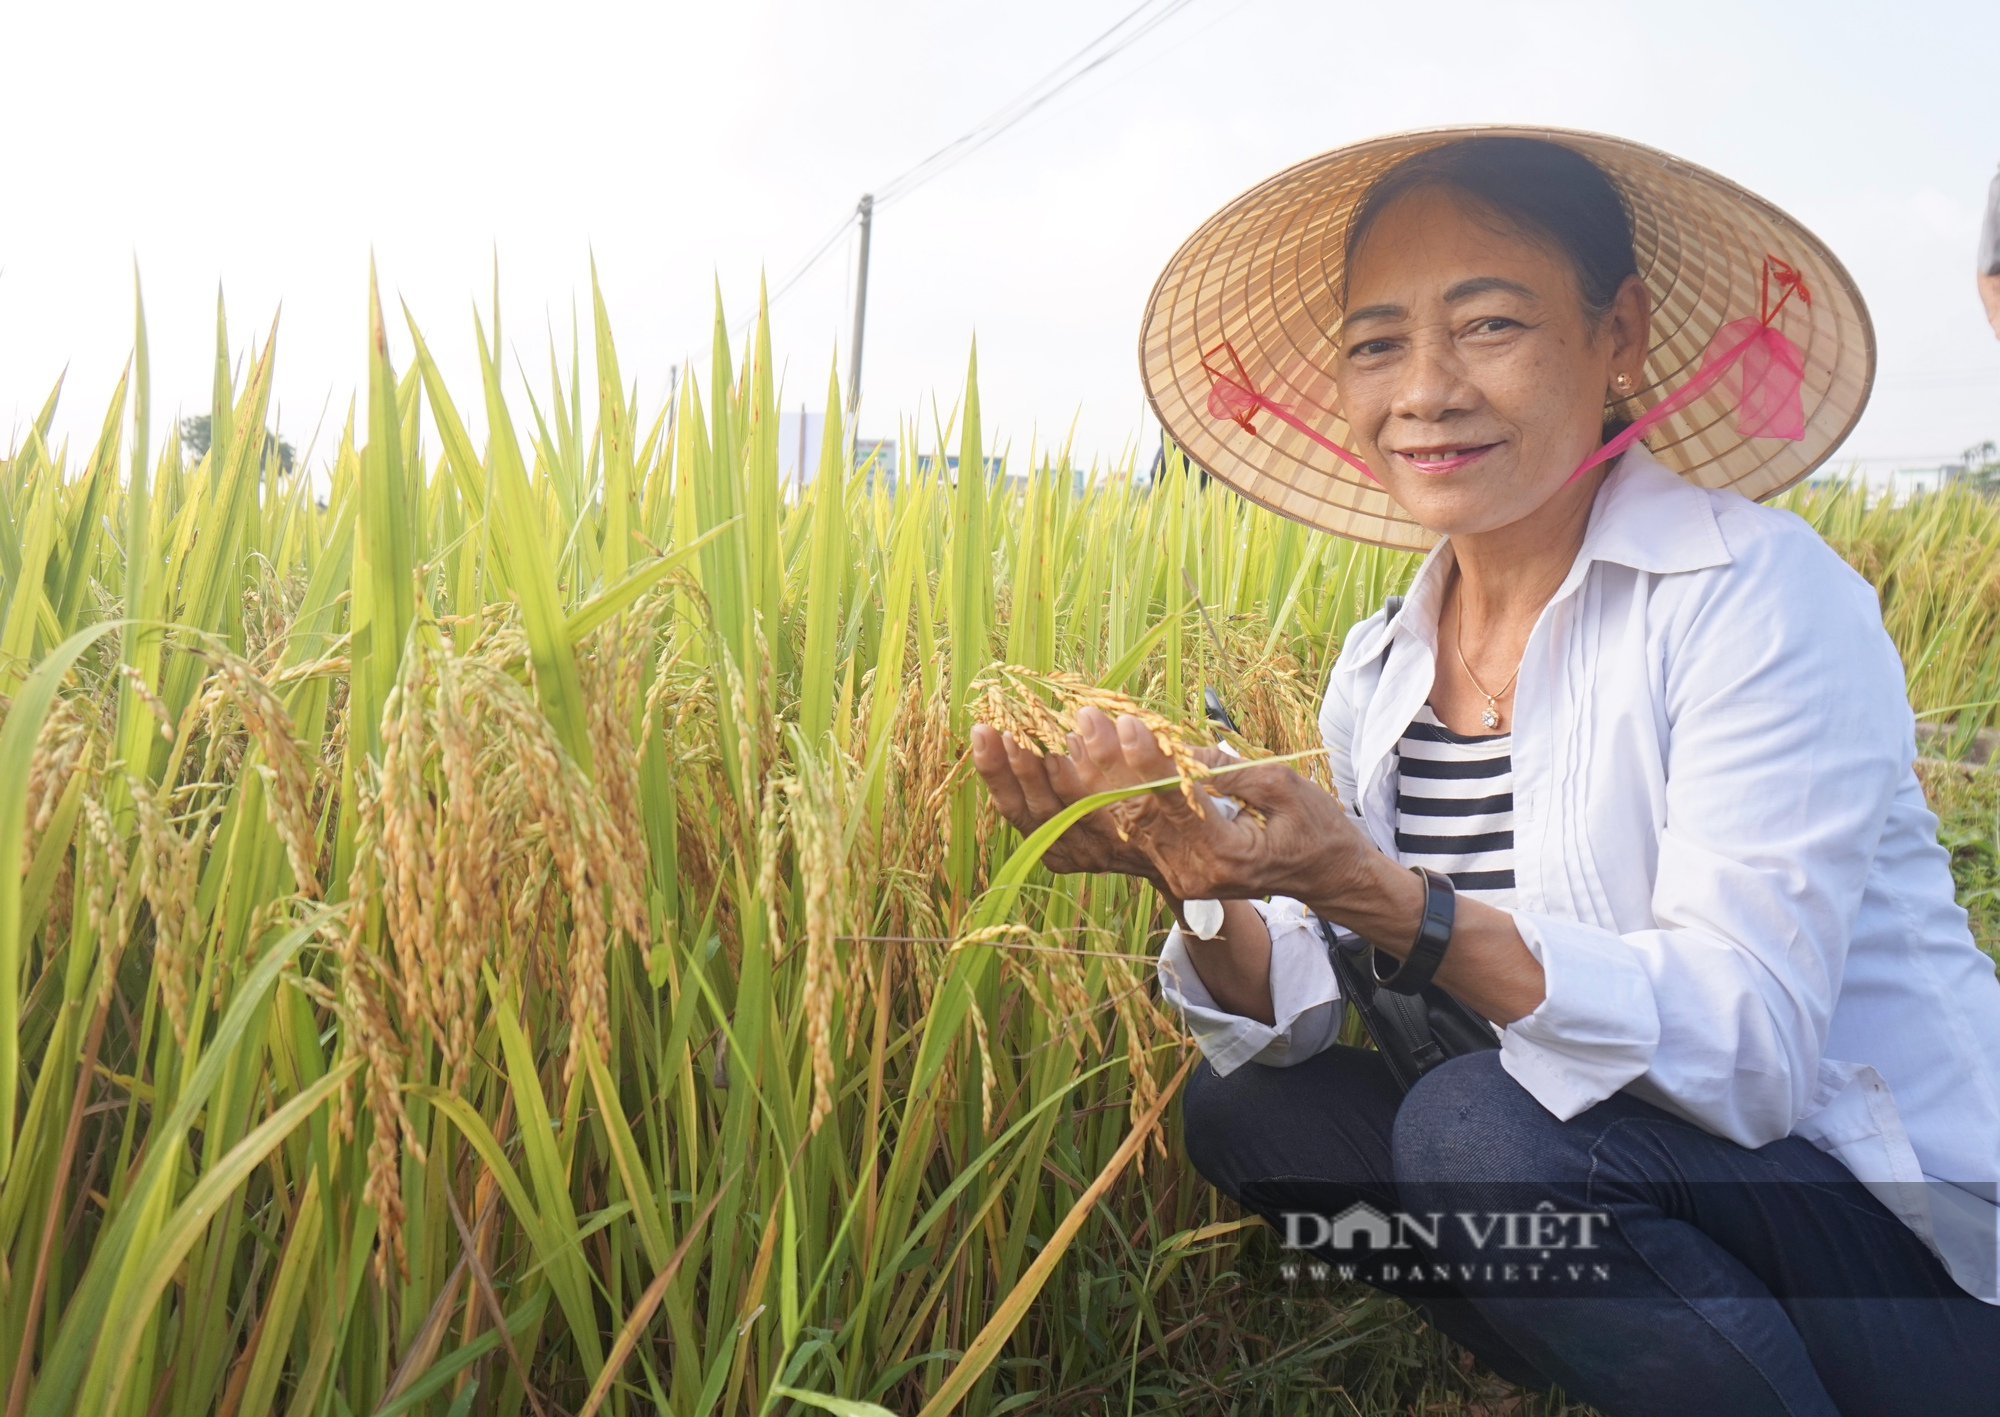 Bộ tứ lúa giống của Vinaseed “tỏa sáng” rực rỡ trên nhiều chân đất, nông dân xứ Quảng mê mẩn - Ảnh 5.